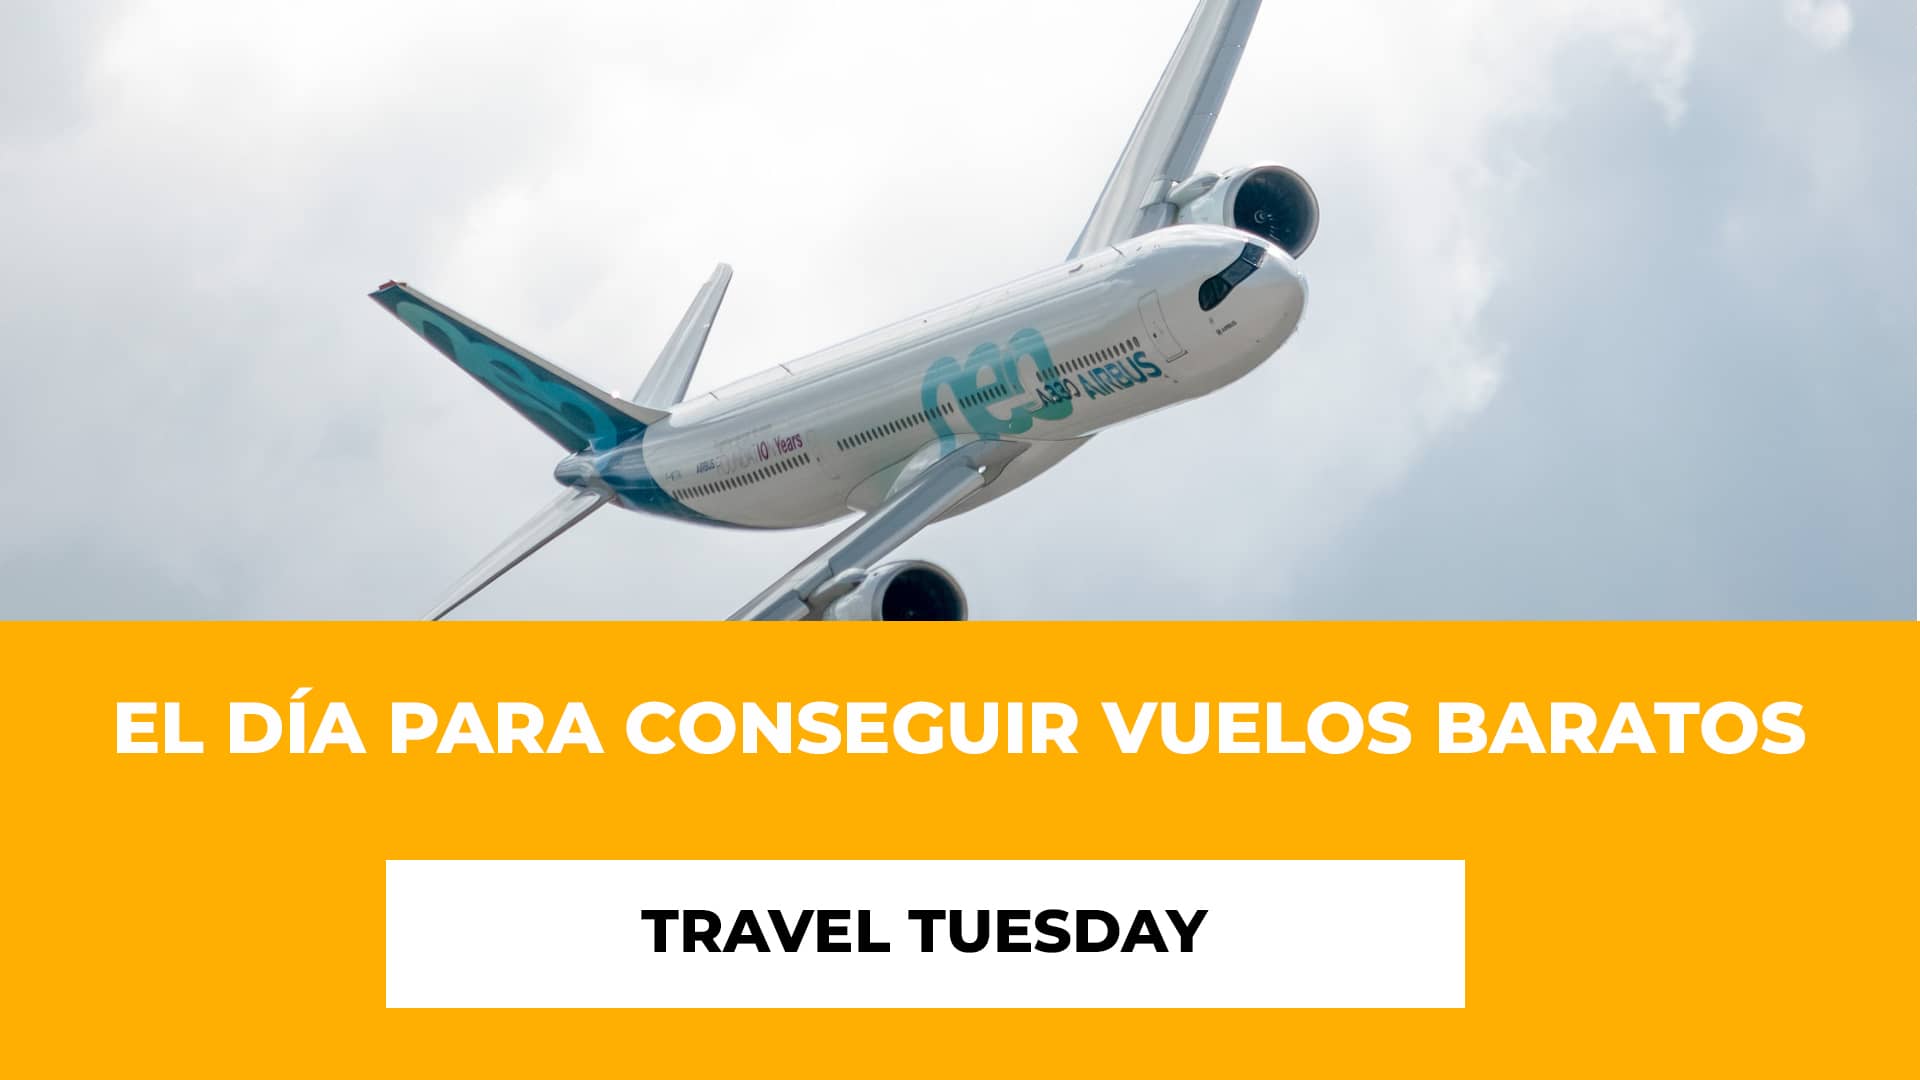 Travel Tuesday: El día para conseguir vuelos baratos